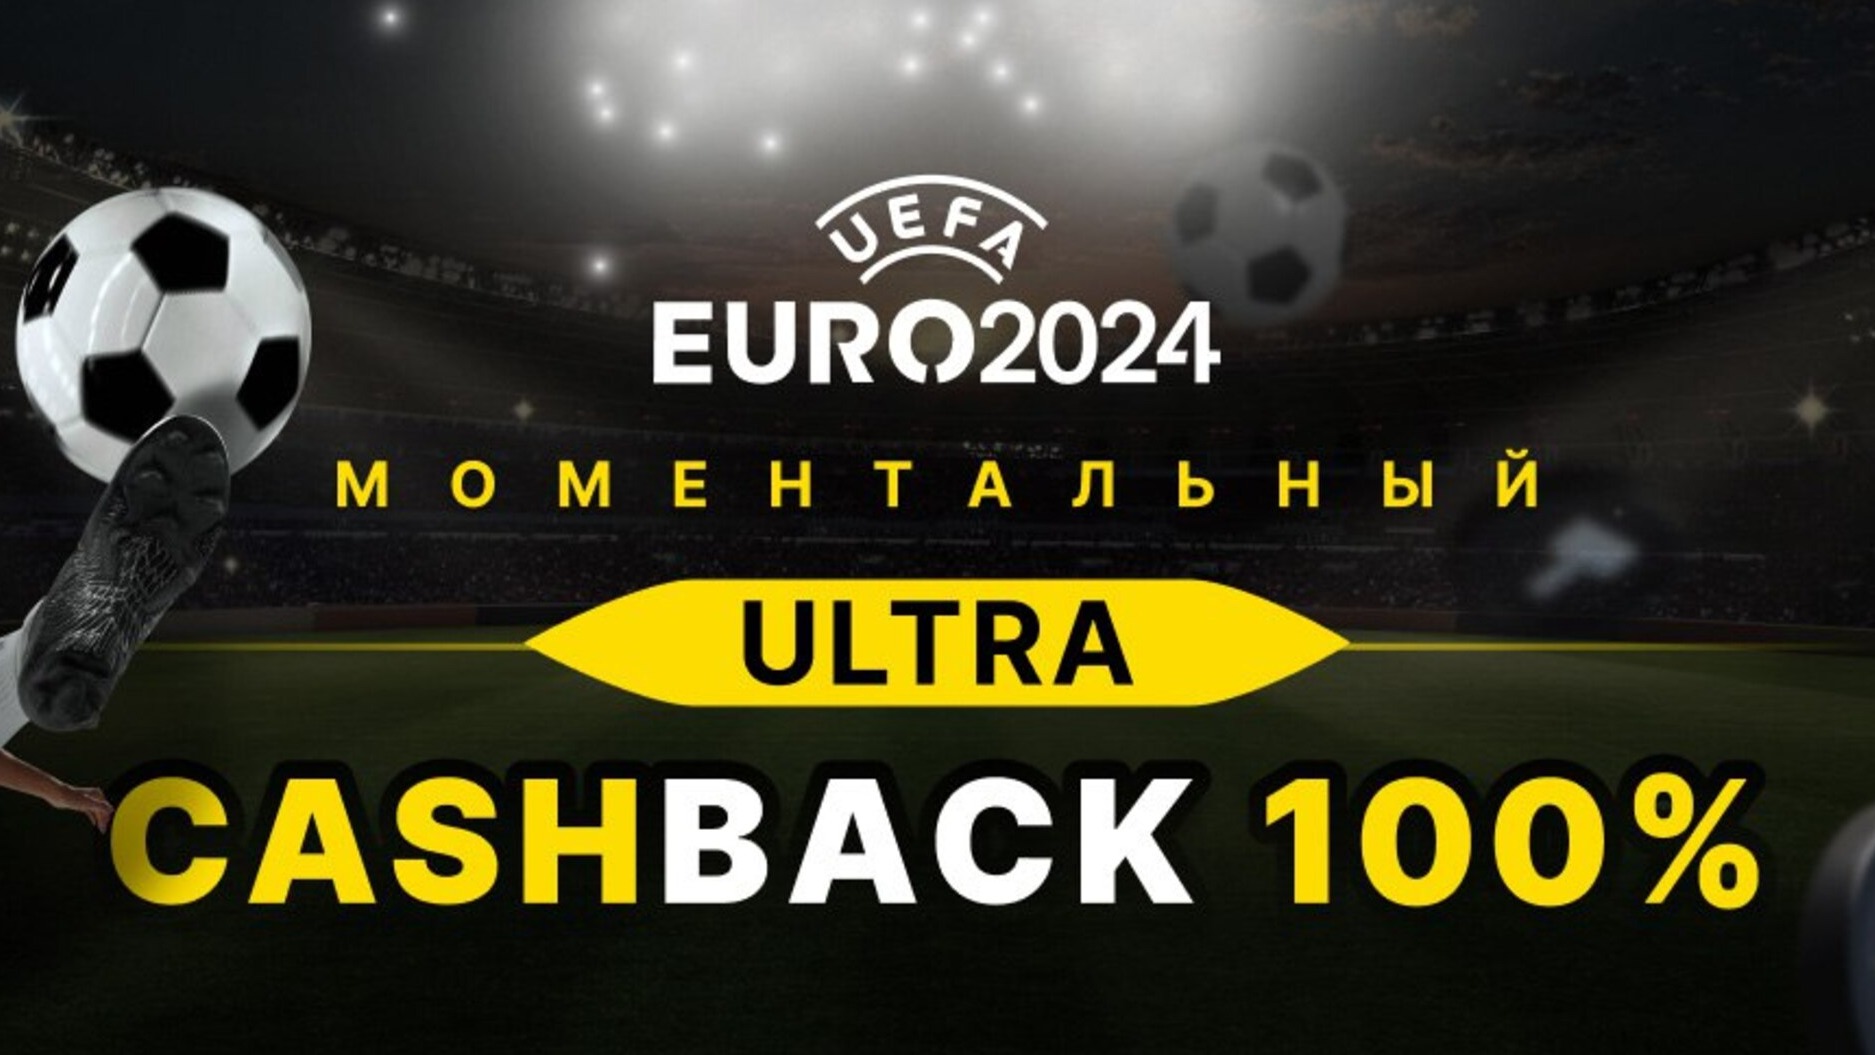 Ubet предлагает моментальный Ultra кэшбэк 100% на отборочные матчи ЕВРО-2024